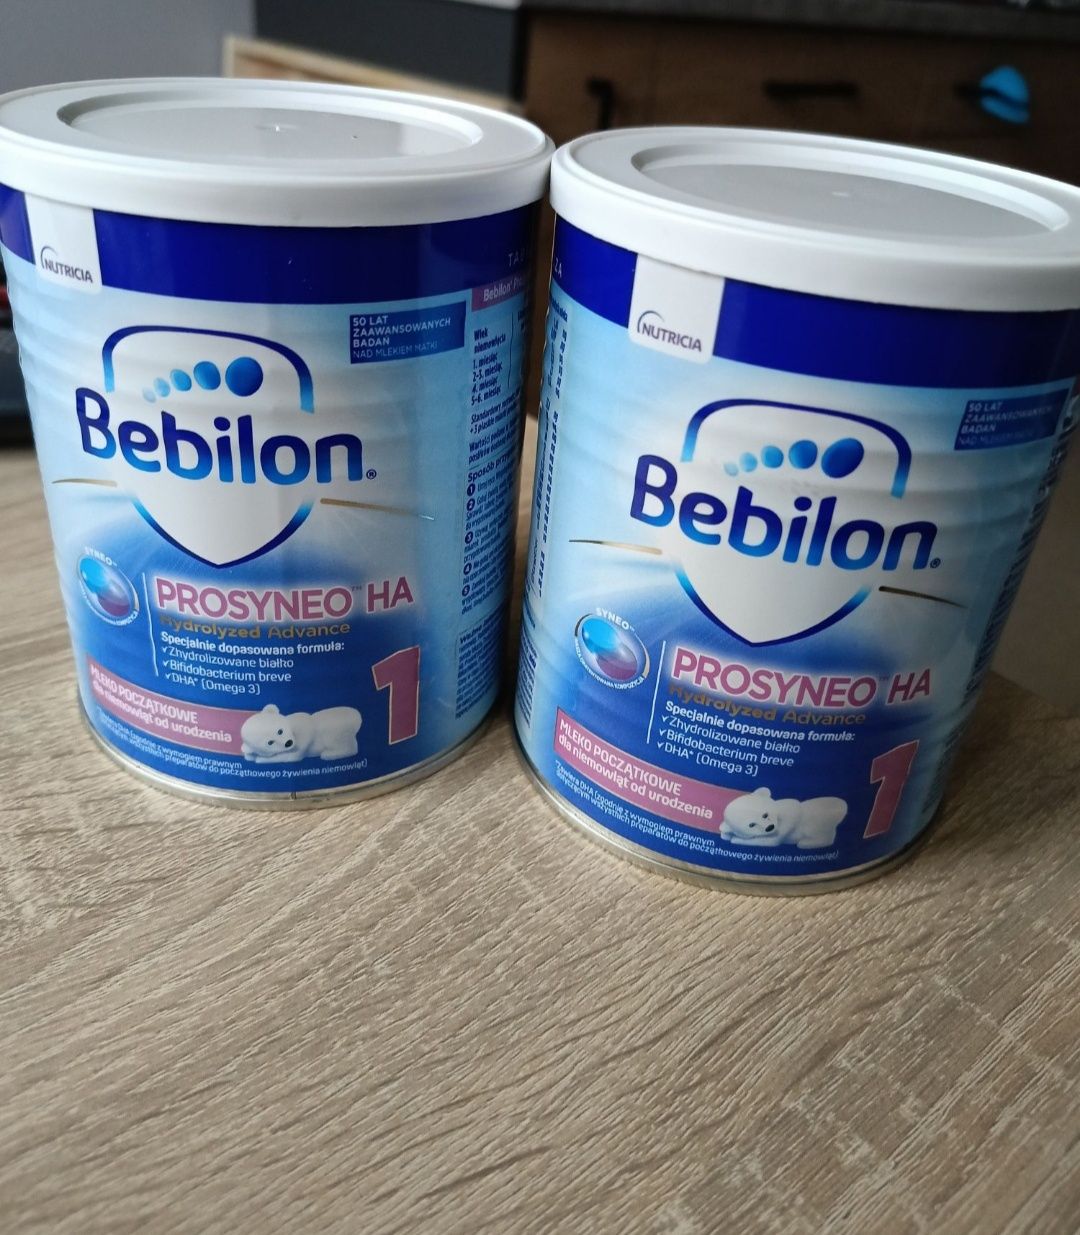 Mleko Bebilon prosyneo ha 1